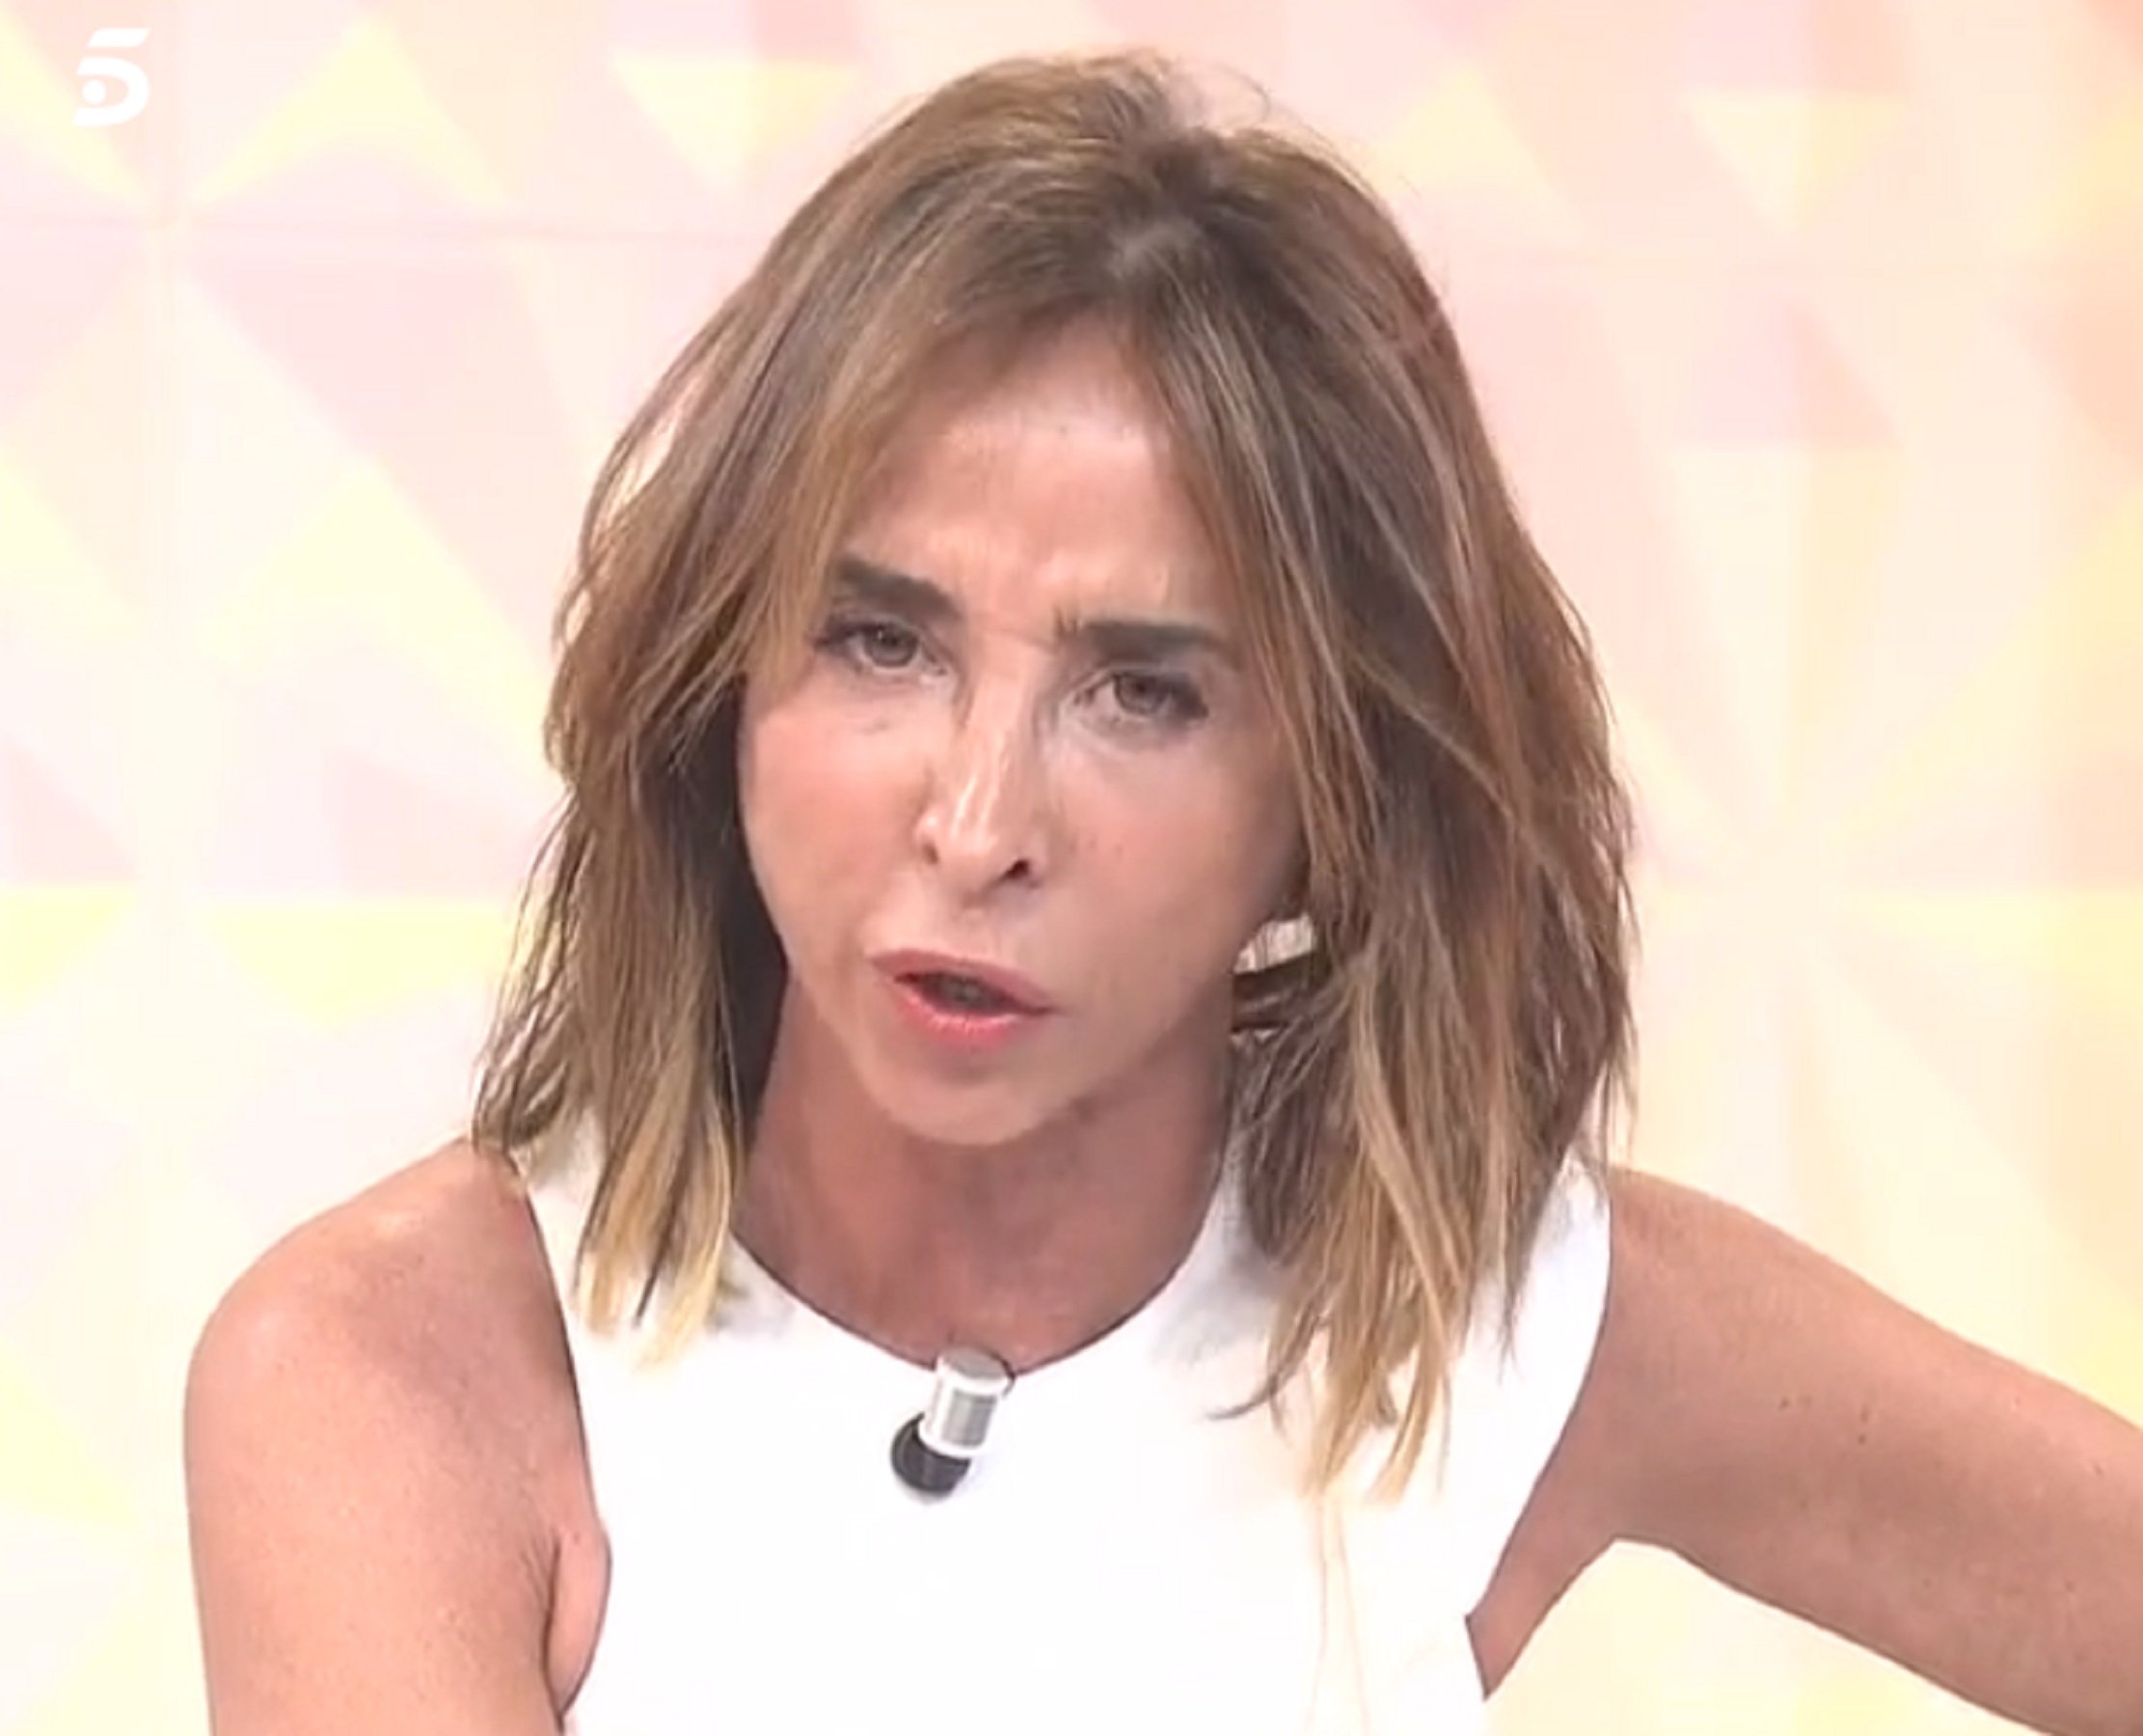 Guerra entre Cristina Seguí i dues famoses de T5 pel cas Merlos: "A la mierda"